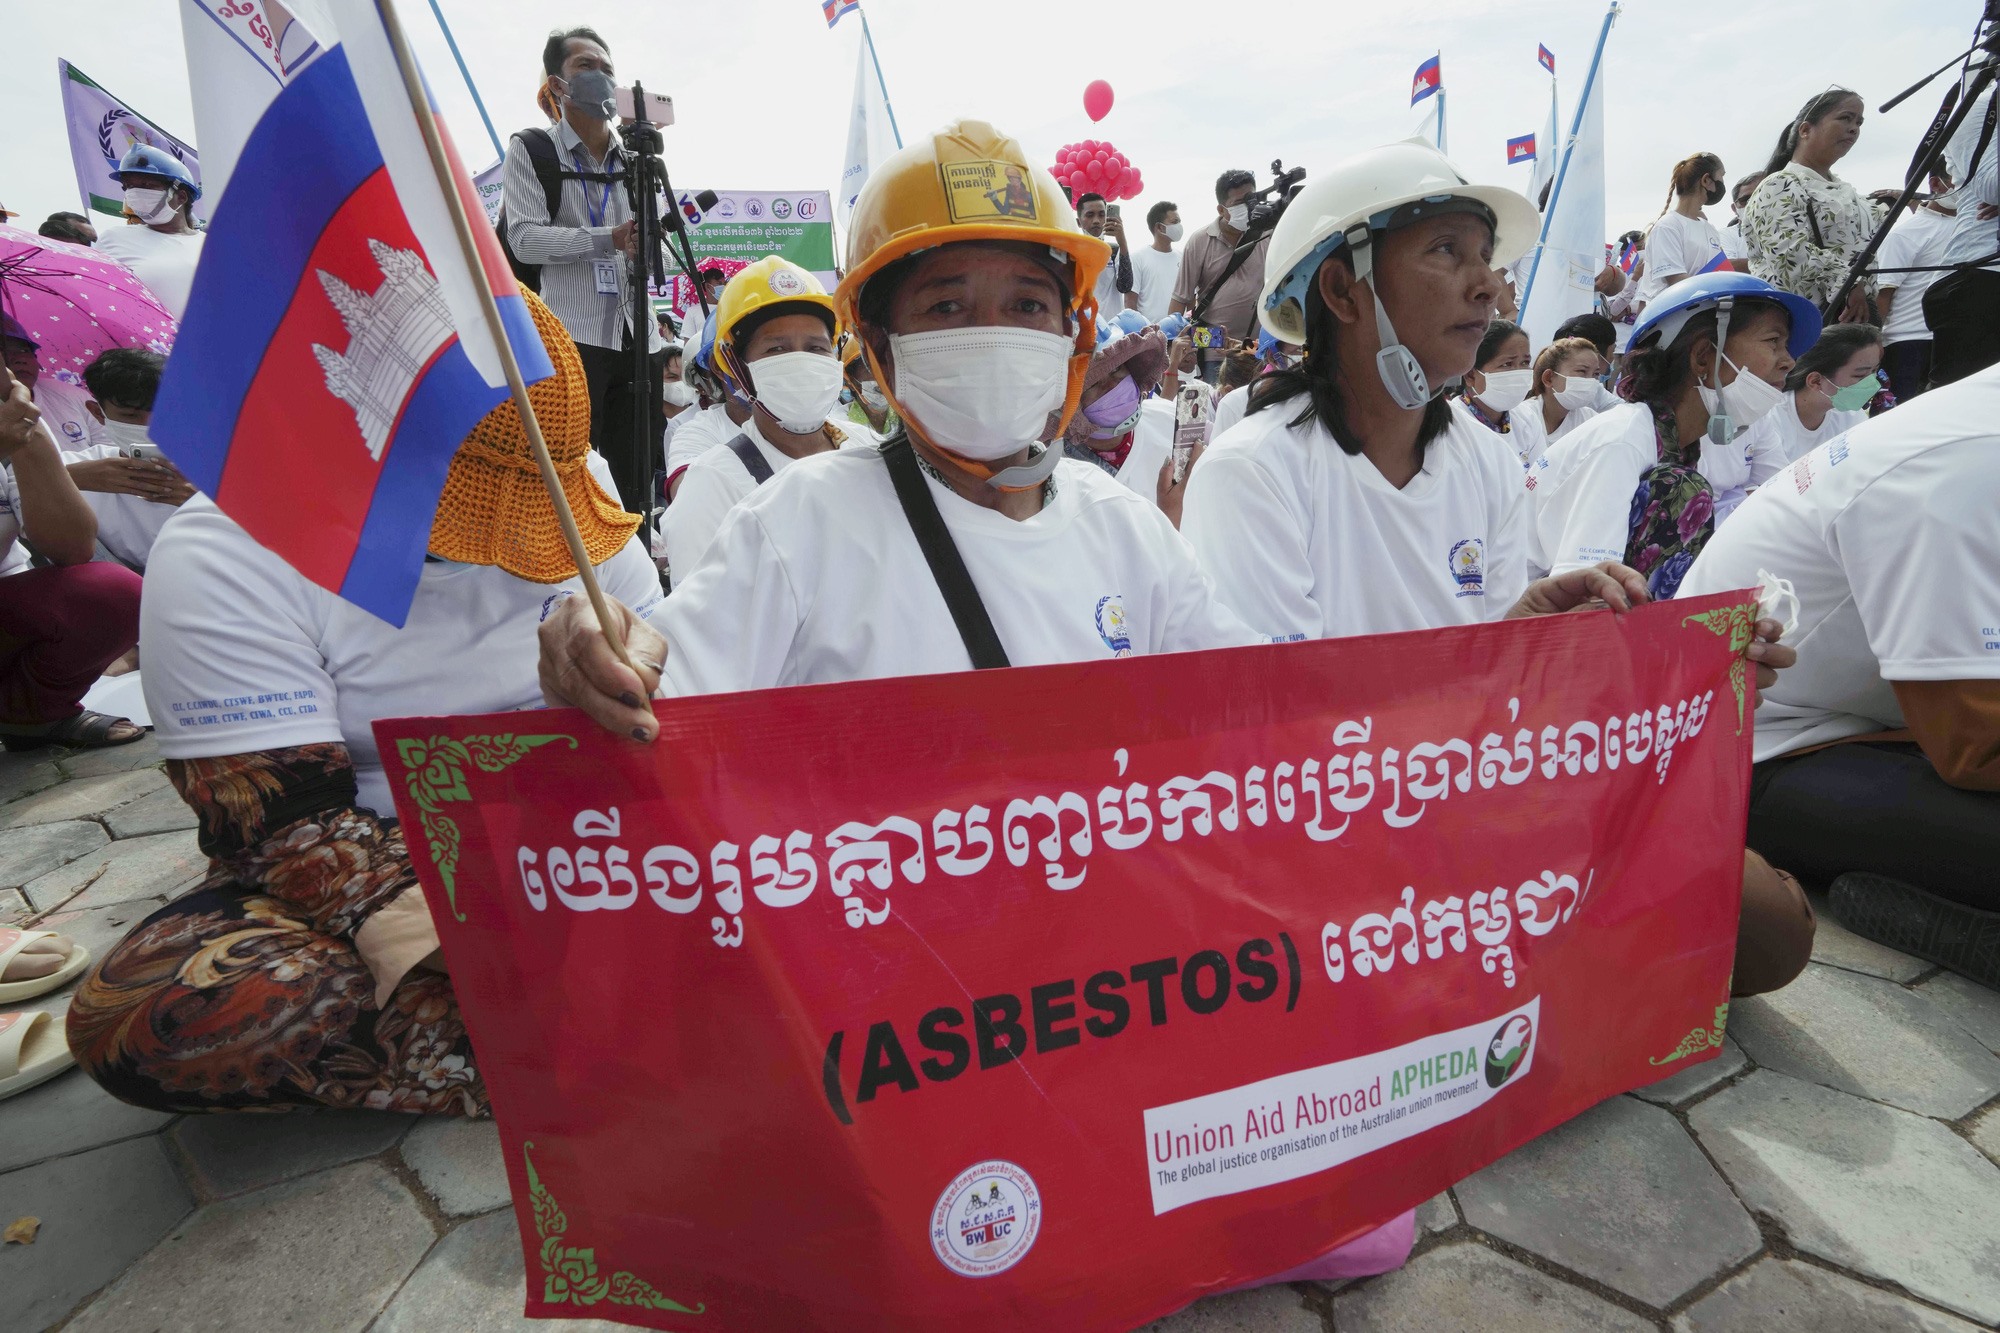 Công nhân Campuchia cầm biểu ngữ với khẩu hiệu 'Chúng ta cùng nhau chấm dứt việc sử dụng ASBESTOS ở Campuchia' khi họ tham gia vào một cuộc tụ họp để đánh dấu Ngày tháng Năm gần chùa Wat Phnom ở trung tâm Phnom Penh, Campuchia. Ảnh: AP